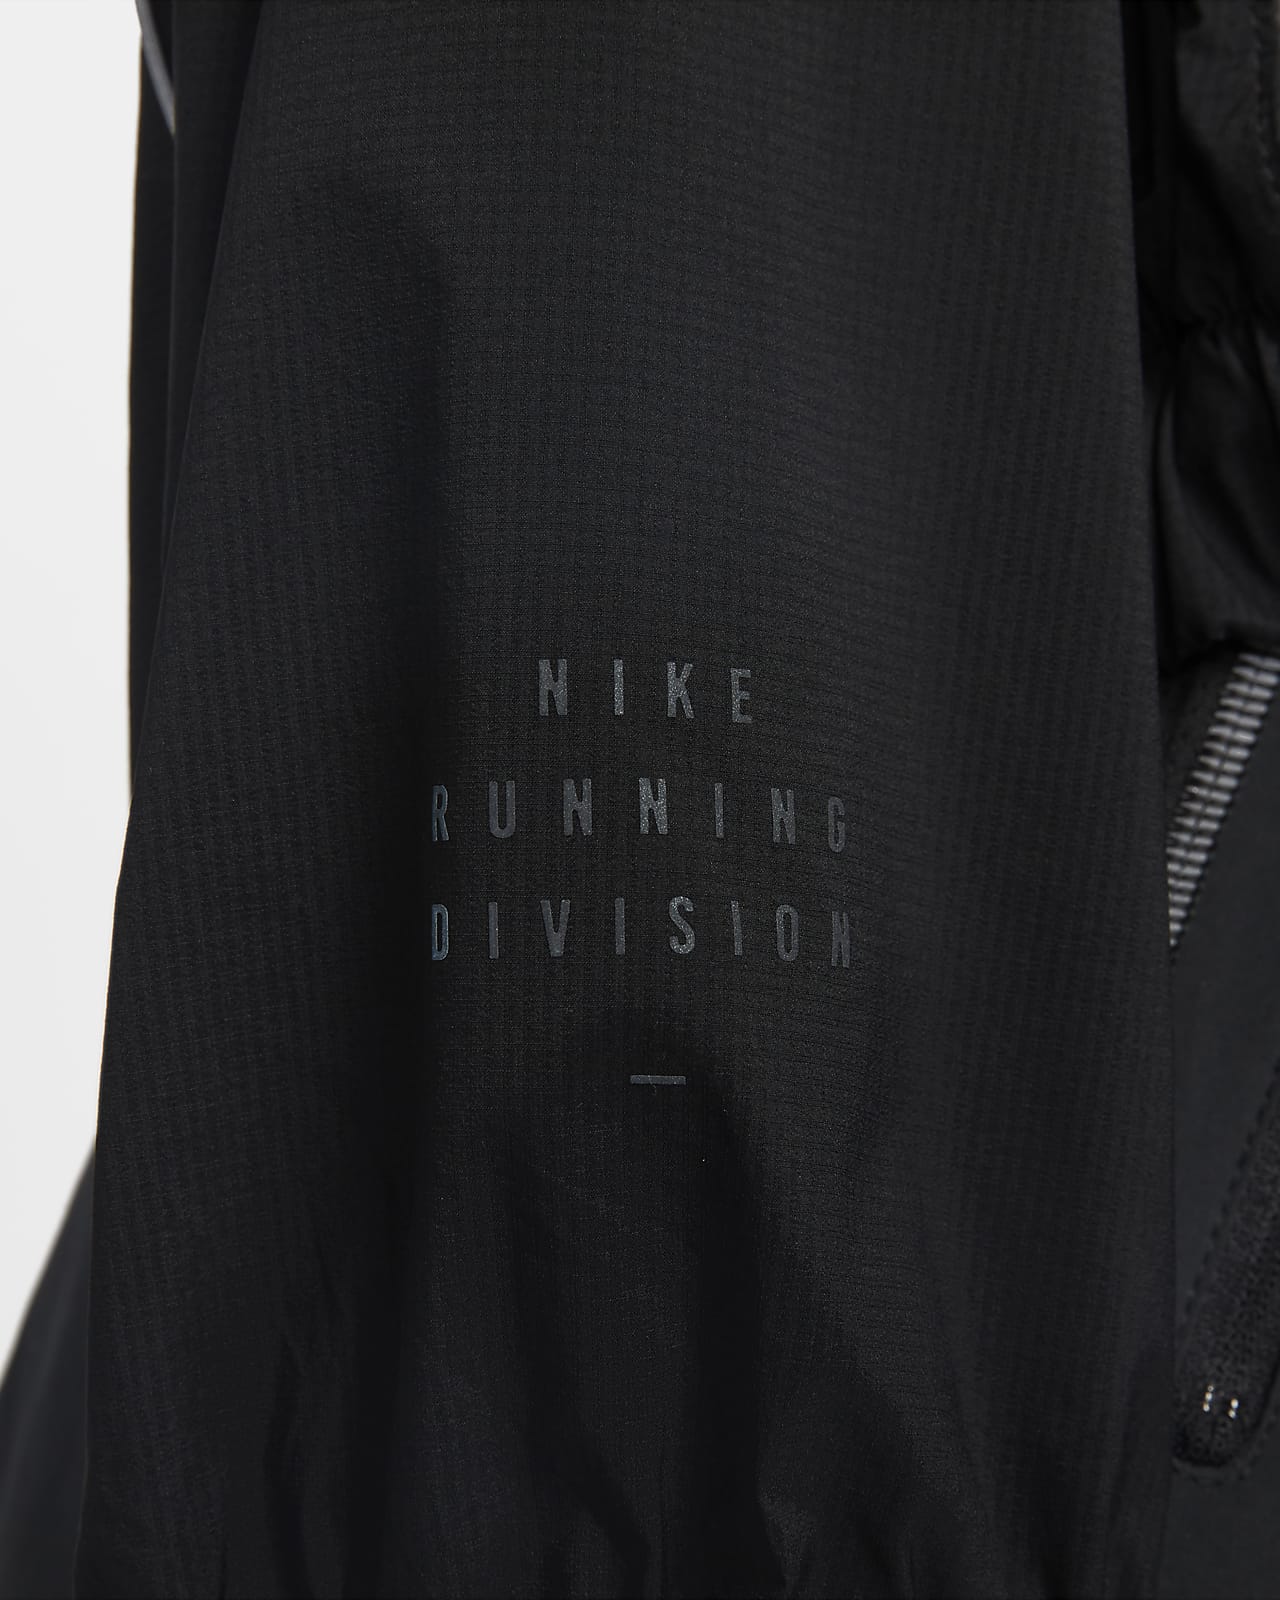 Nike Run Division Women's Jacket. Nike